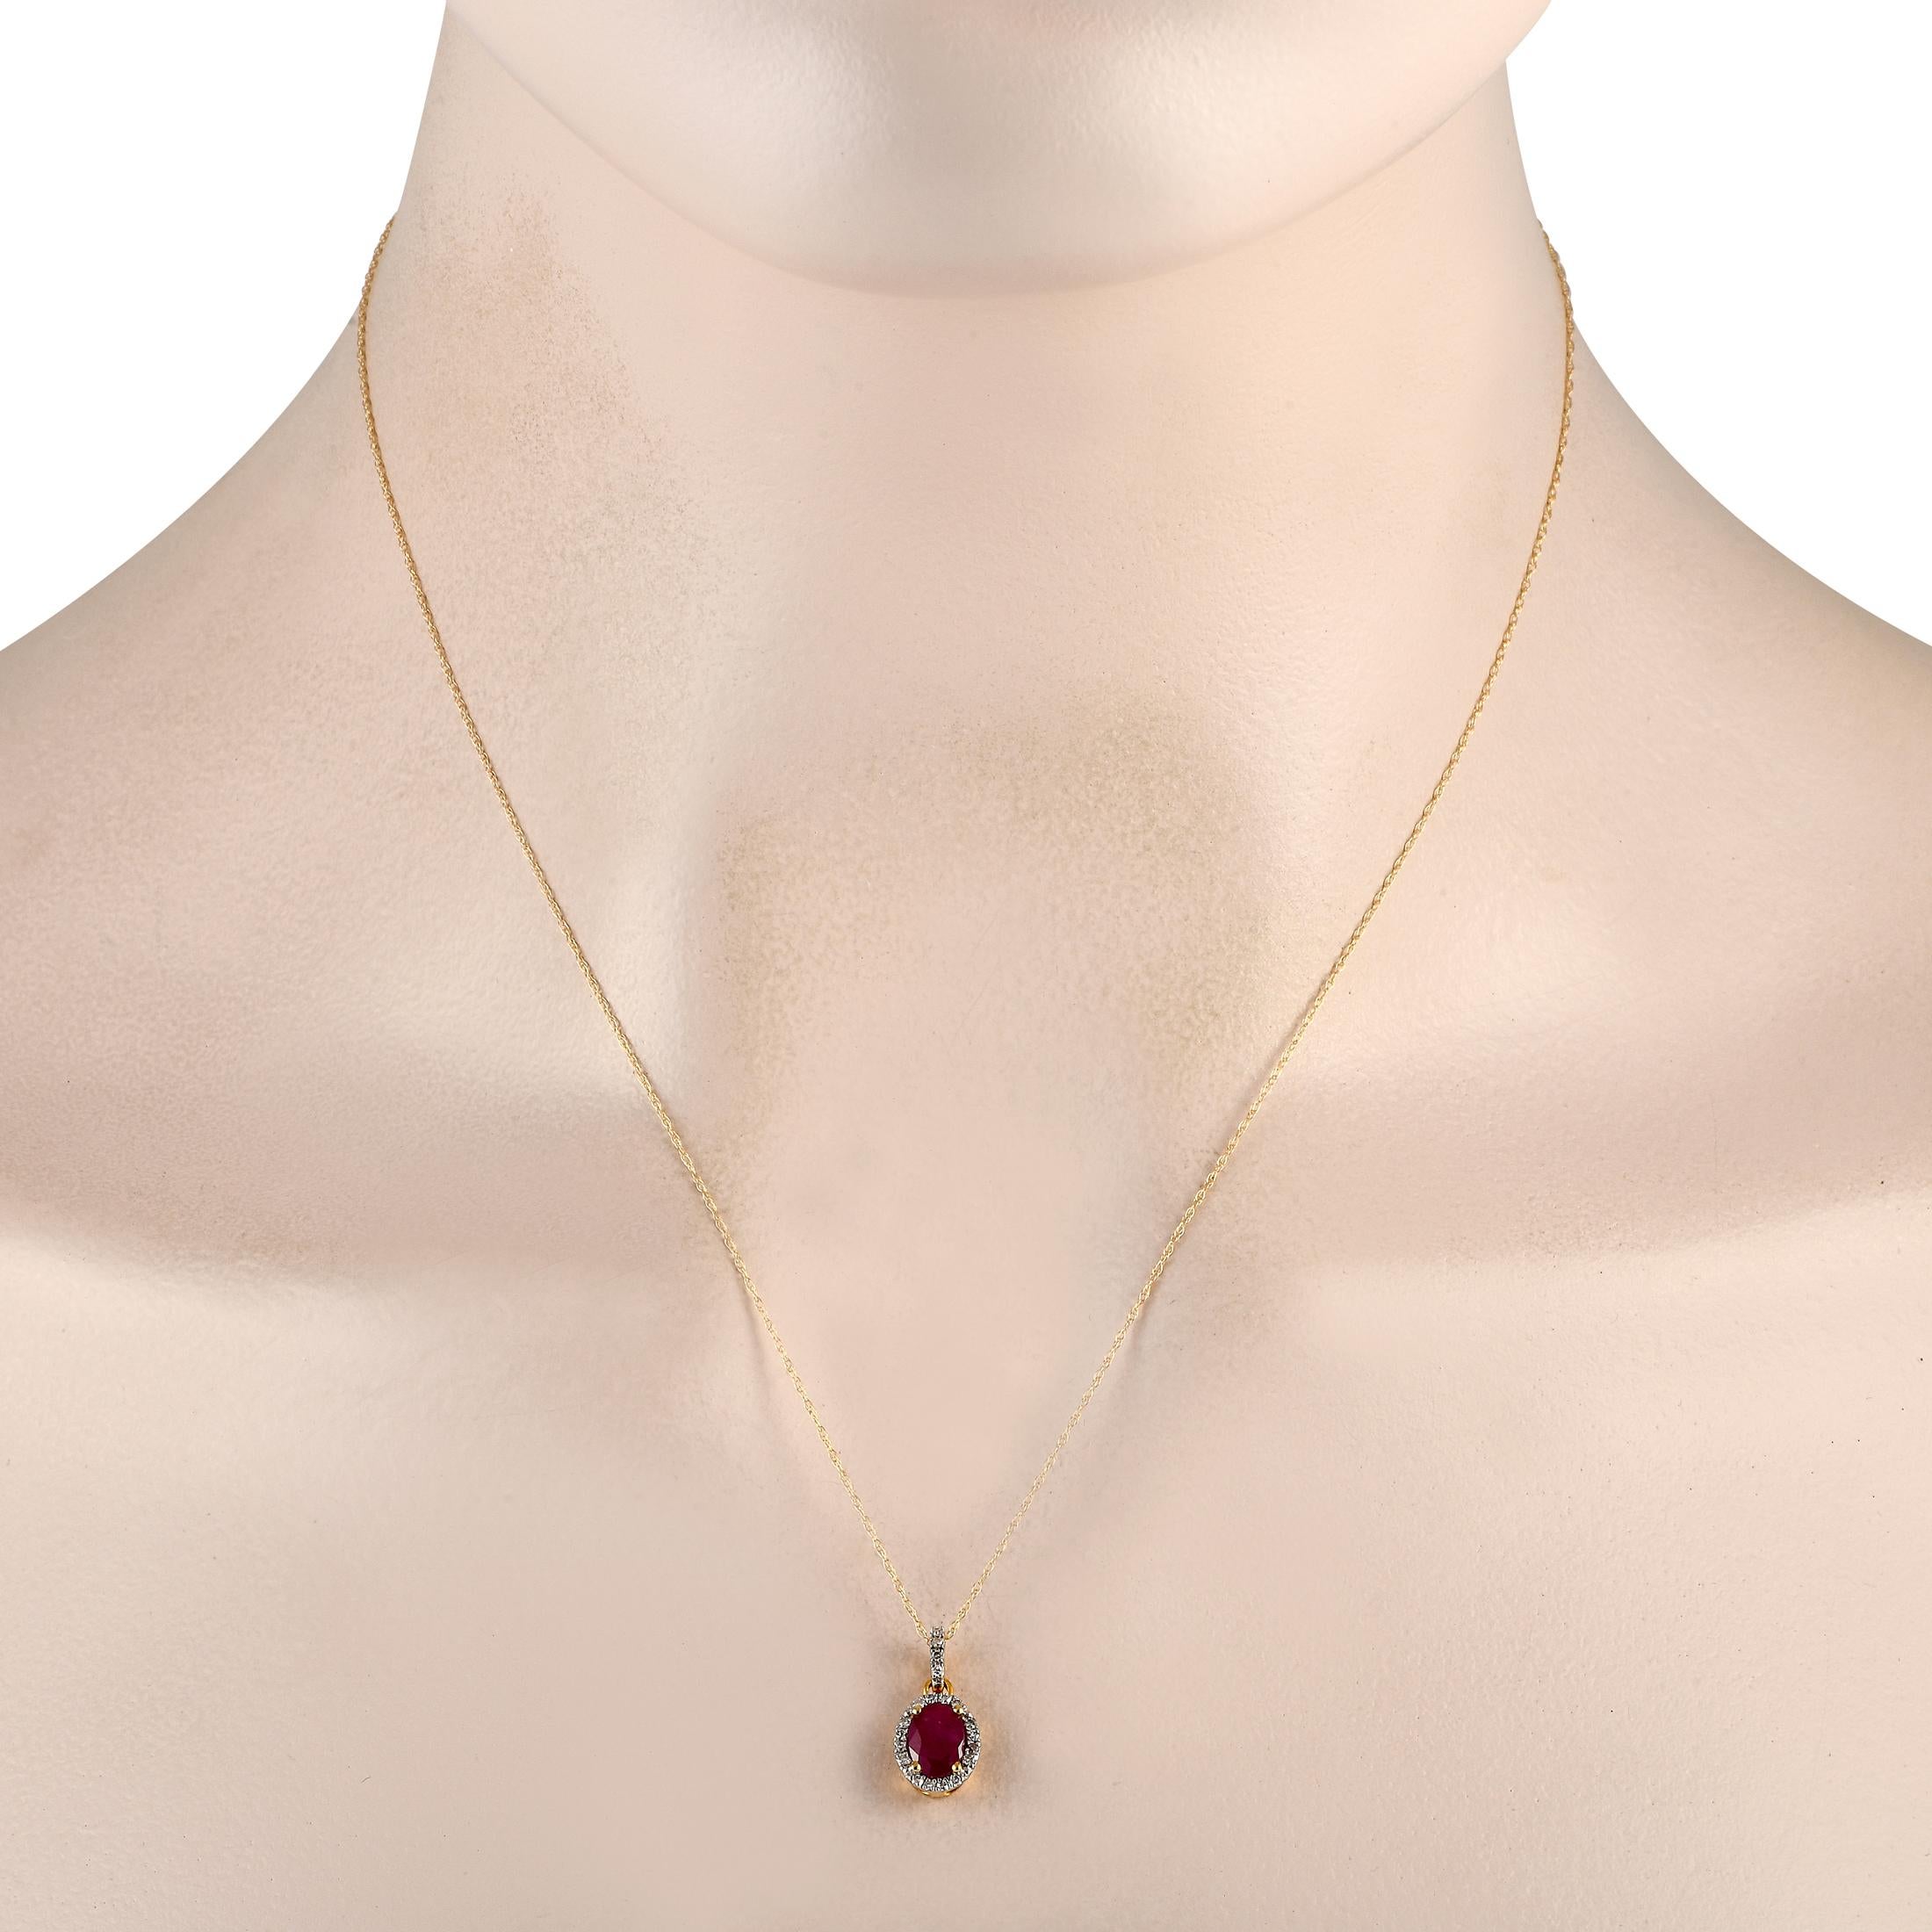 Une pierre centrale ovale en rubis rend ce collier tout simplement inoubliable. Simple et élégant, ce pendentif en or jaune 14 carats mesure 0,65 de long sur 0,25 de large. Il est suspendu à une chaîne de 18 et comprend des accents de diamants